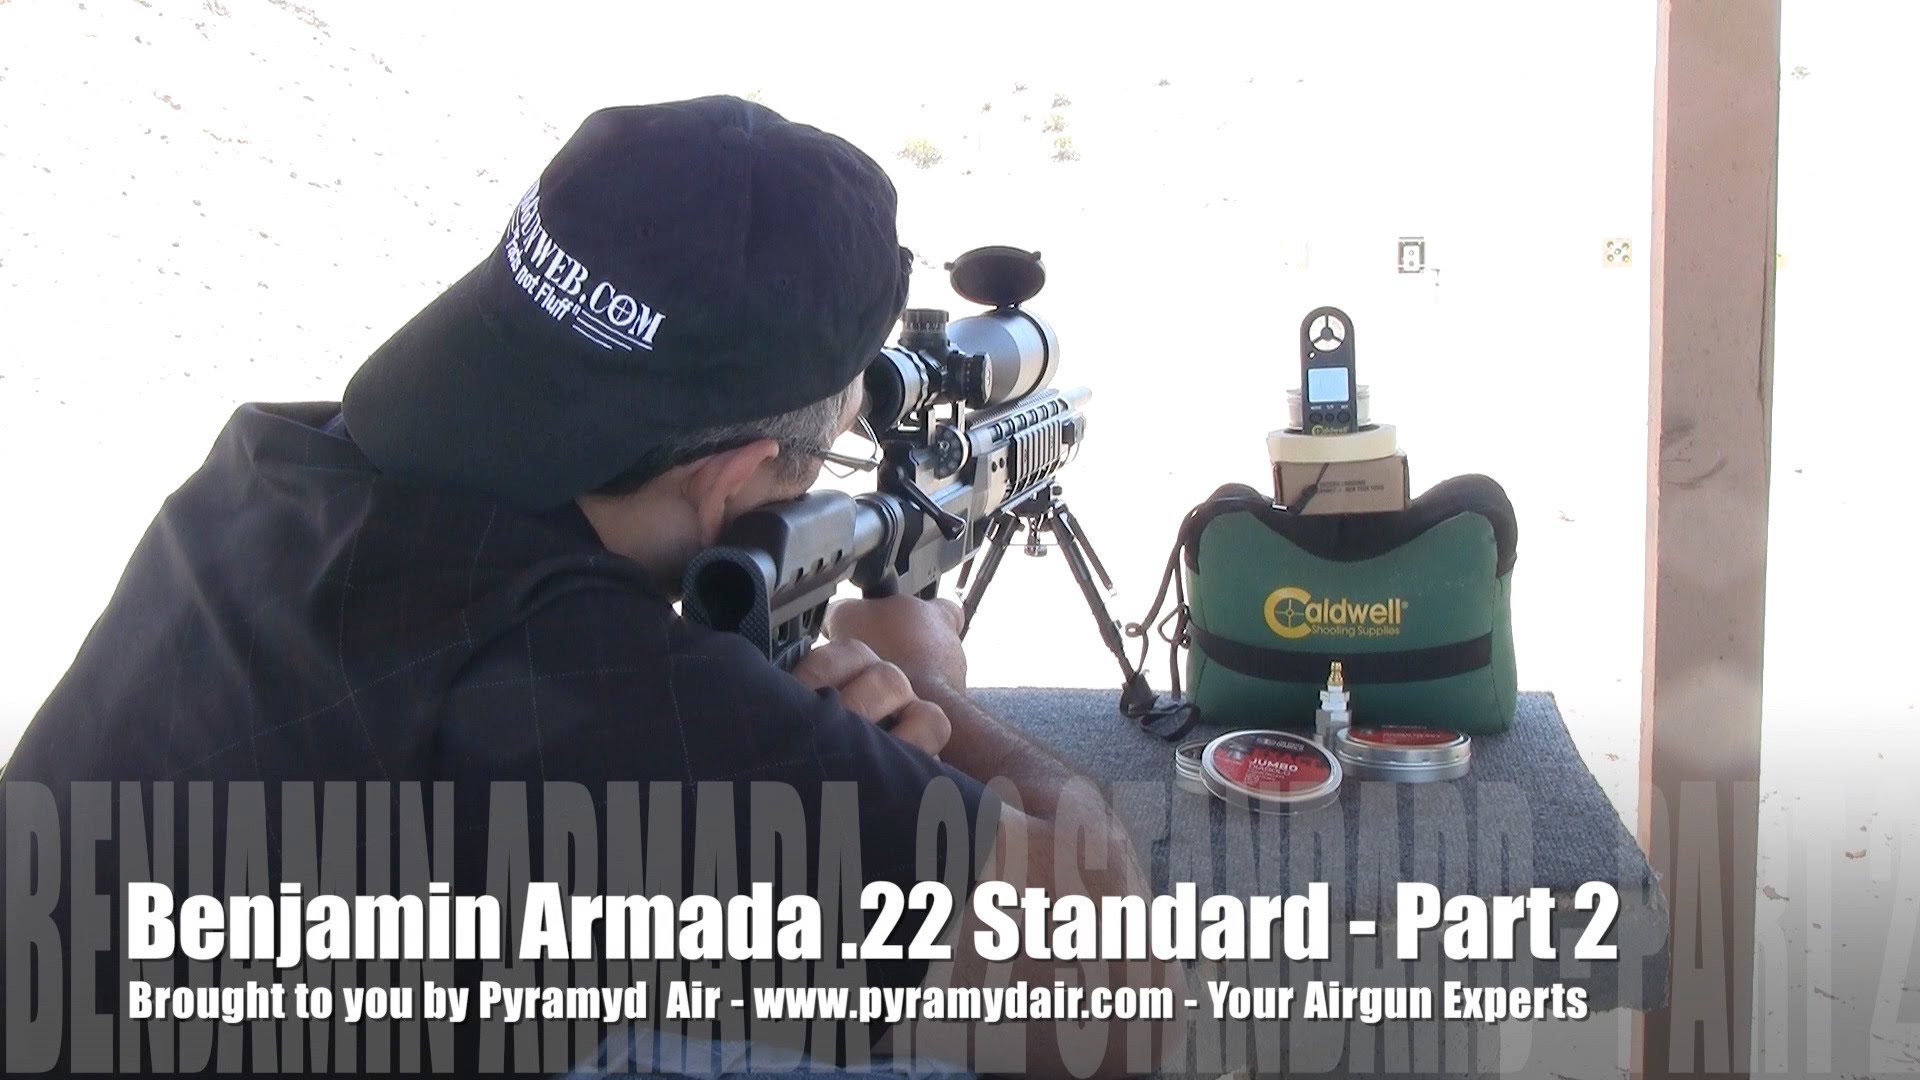 Benjamin Armada Standard Part 2 - Airgun Review by AirgunWeb / Rick Eutsler